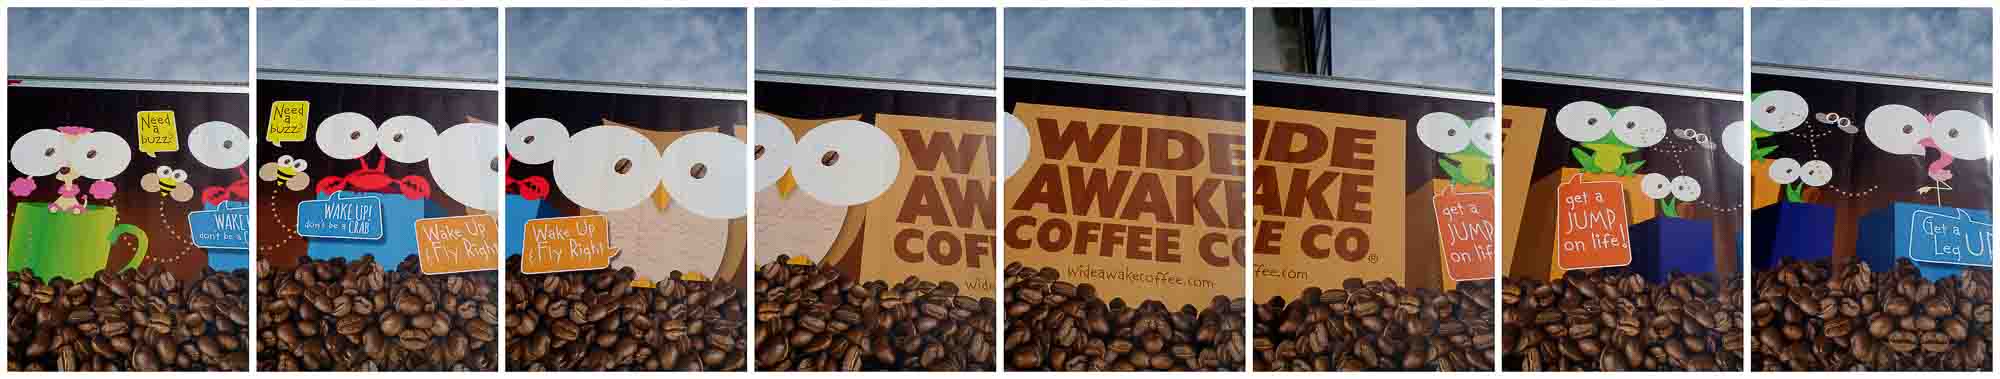 wide awake coffee